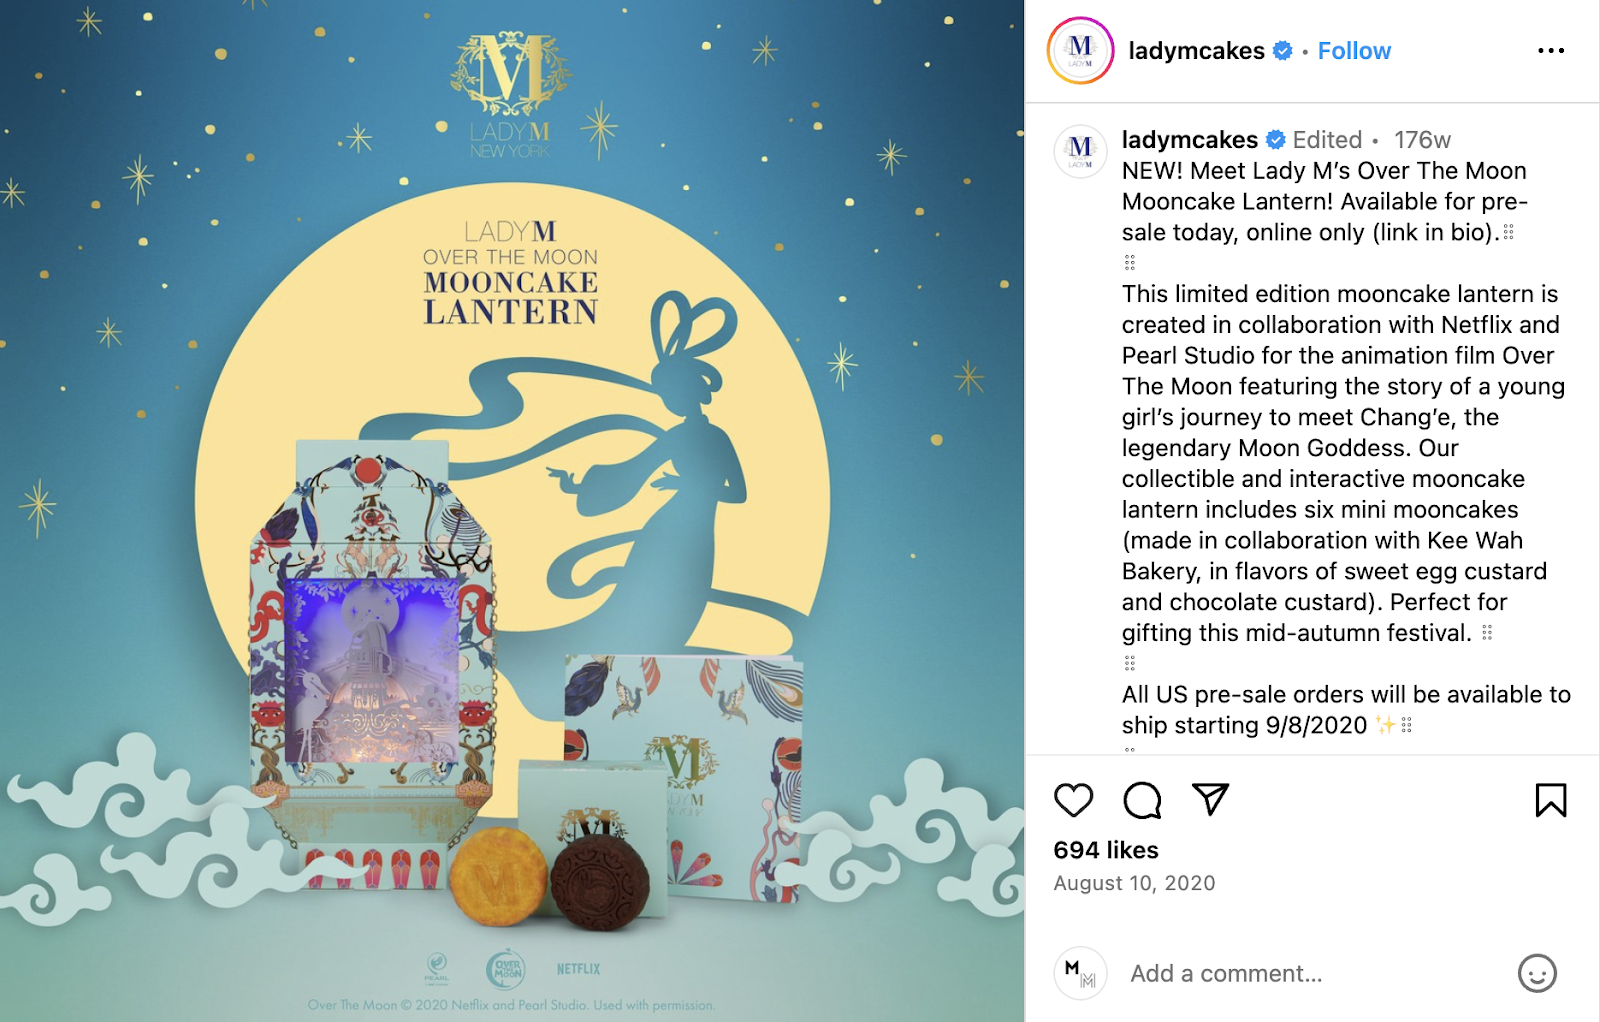 Idee per il marketing di un ristorante: il marchio di dessert Lady M ha creato una lanterna mooncake in edizione limitata in collaborazione con Netflix.